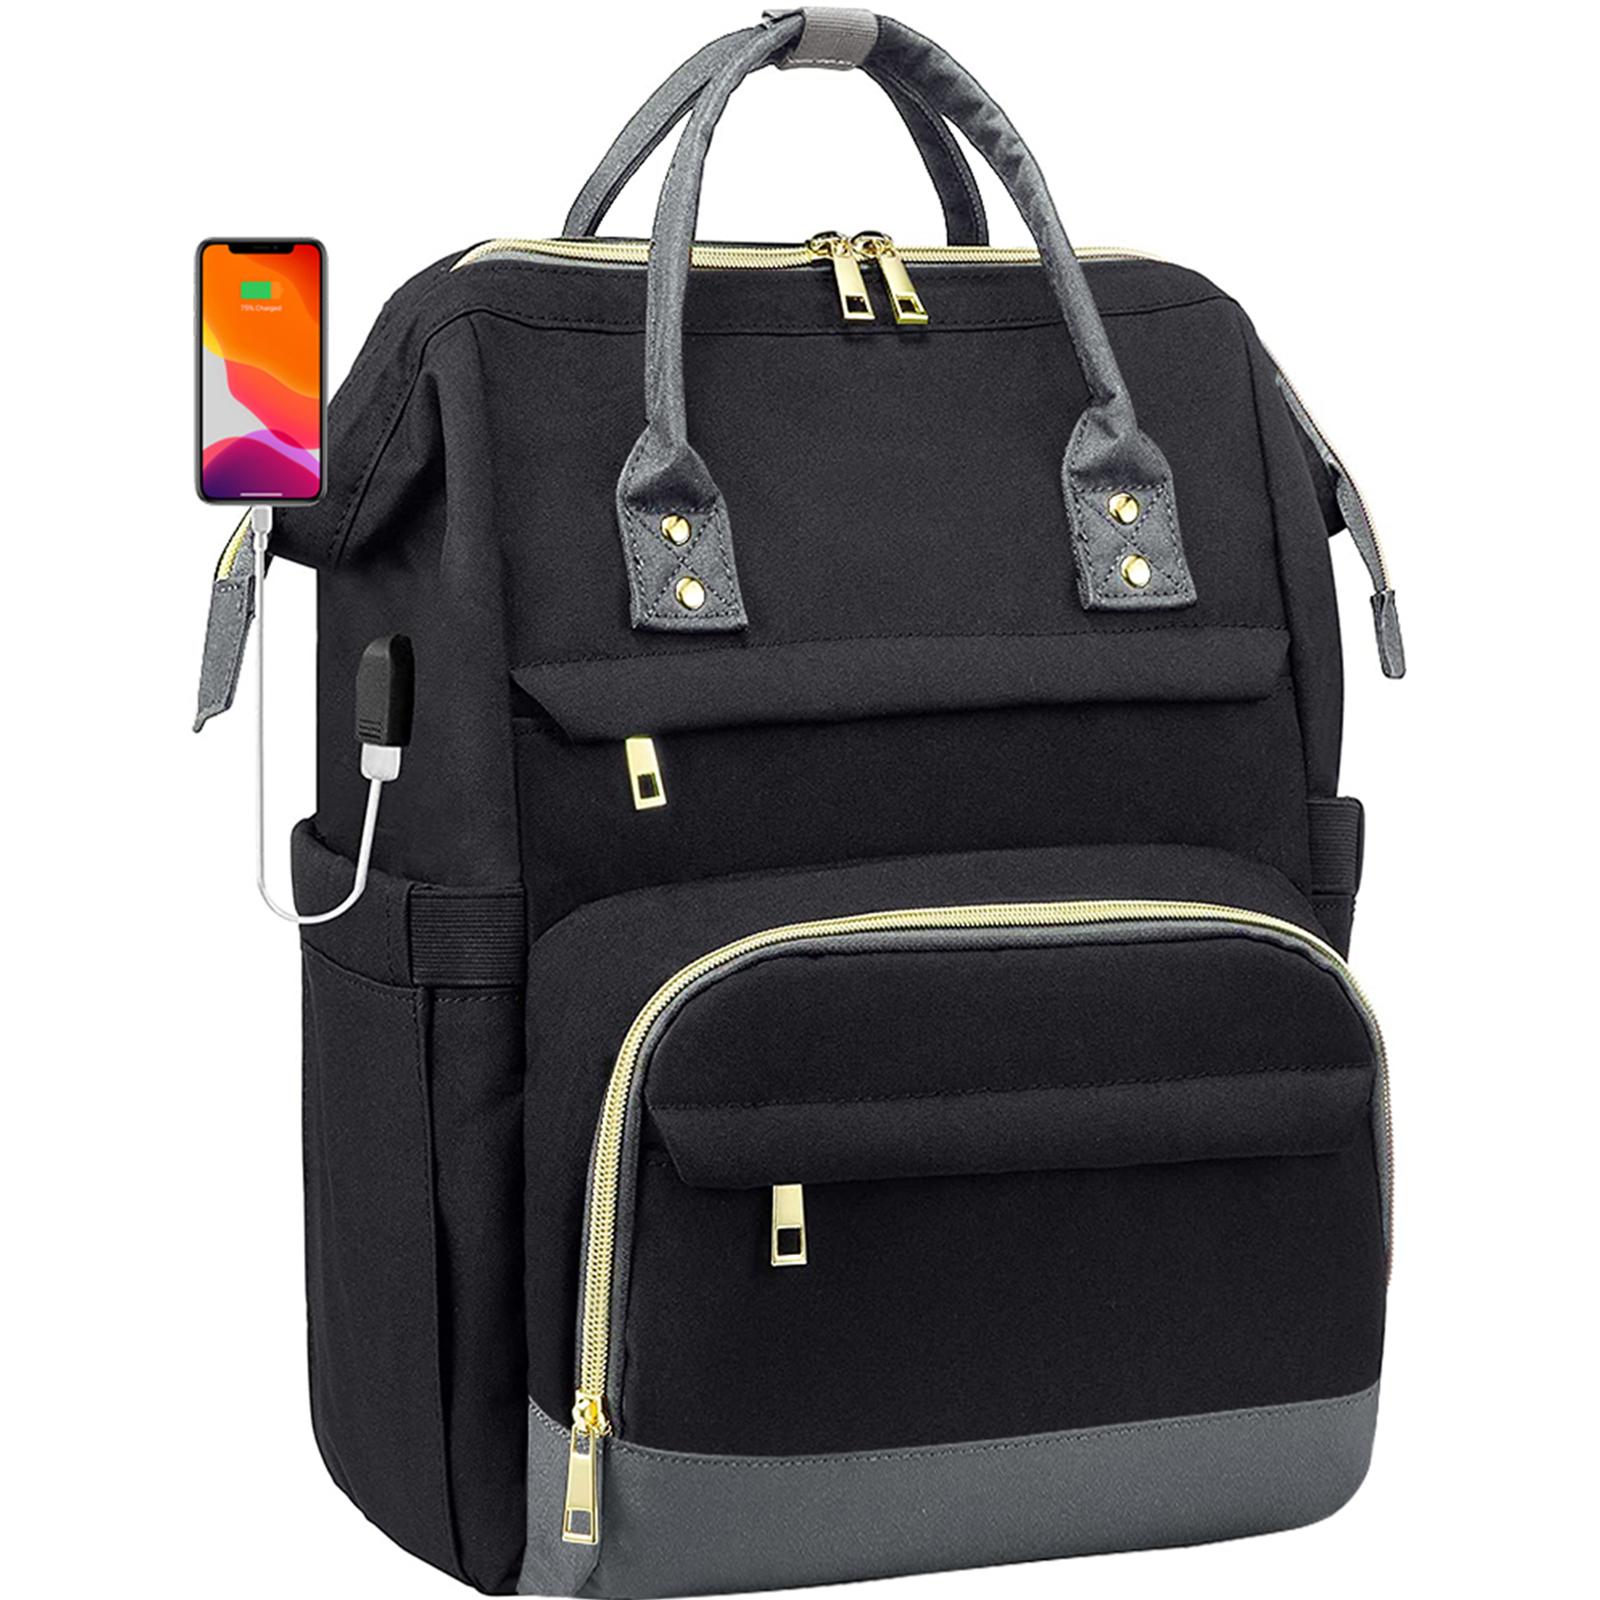 Lsz Männer Frauen Mode Business Computer Rucksäcke Reisetaschen Geldbörse Student Büchertasche Lehrerarbeit Rucksack Mit Usb Port 15,6-Zoll Laptop Tasche